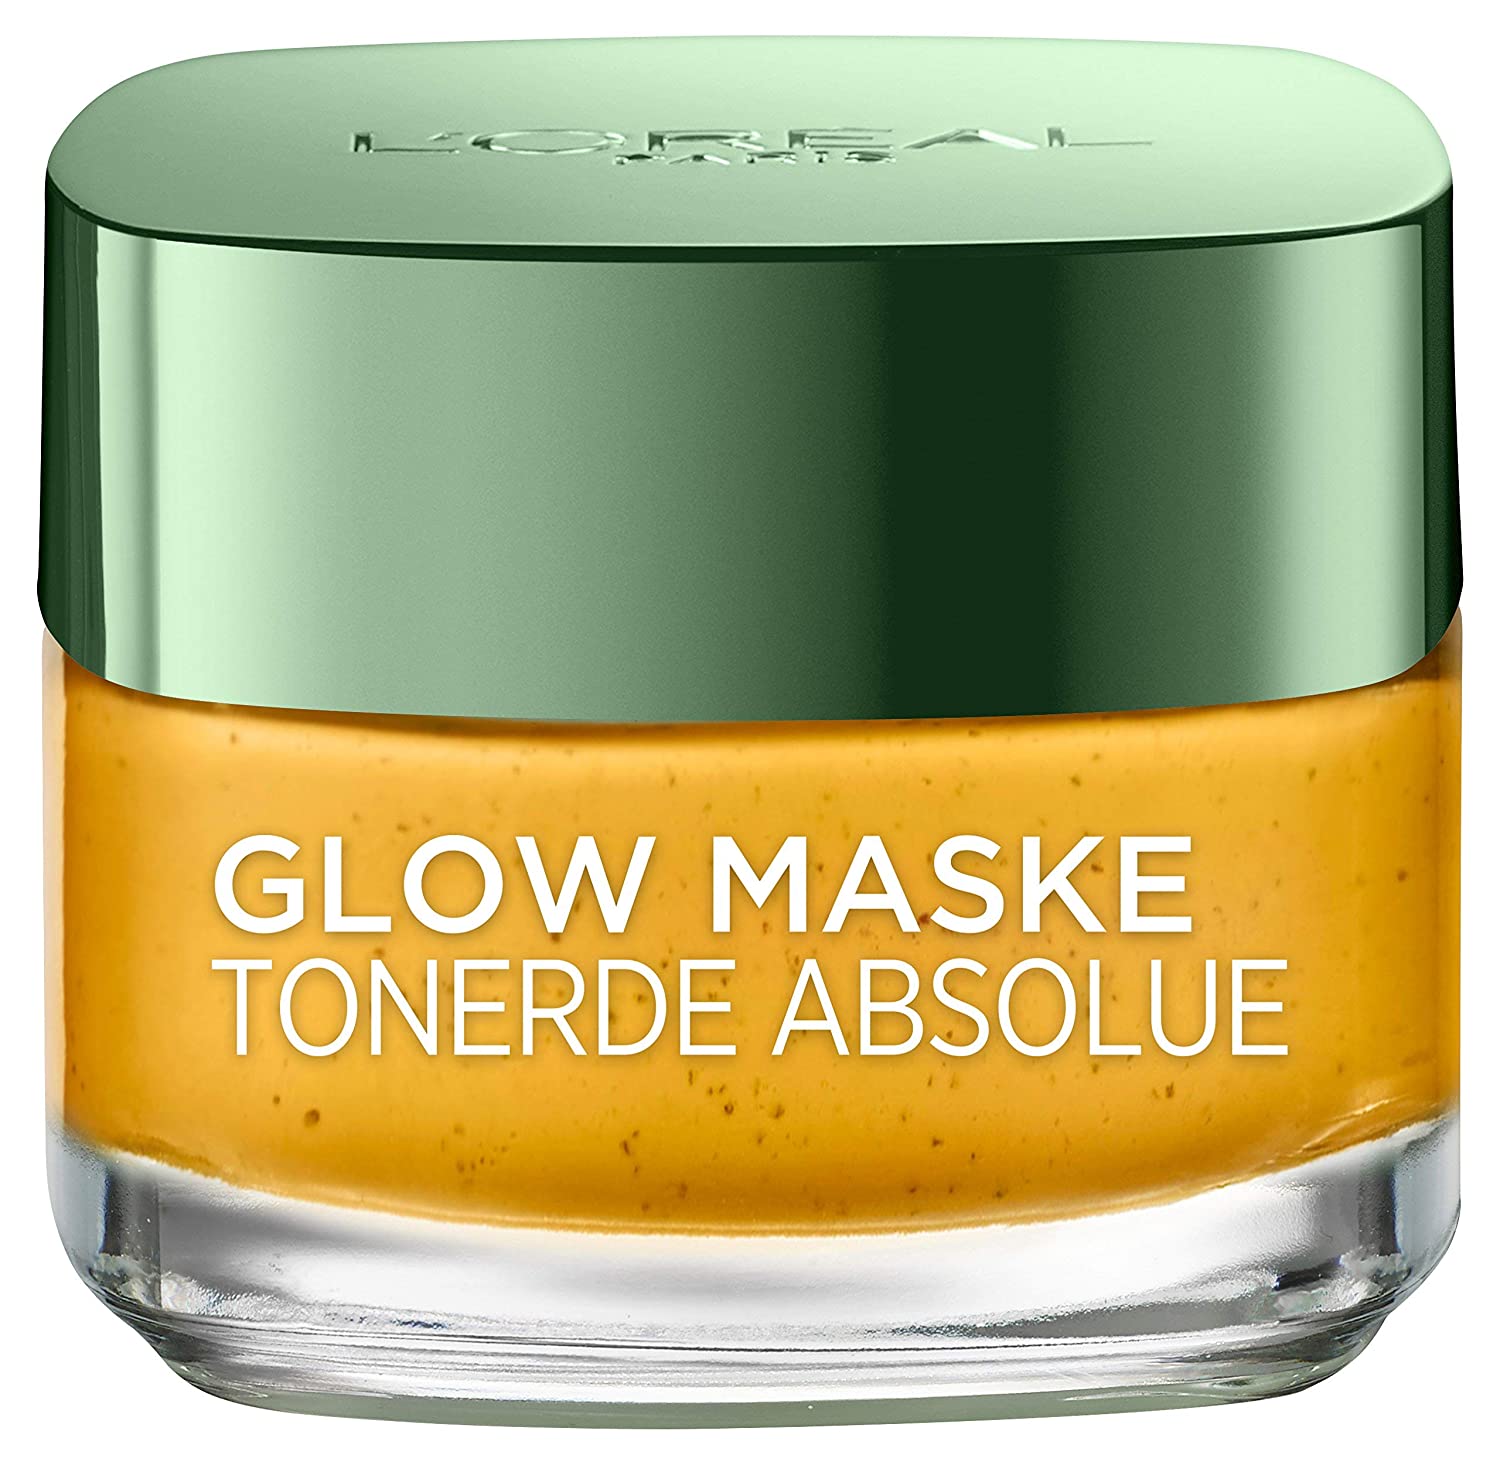 L'Oréal Paris Tonerde Absolue Glow Maske